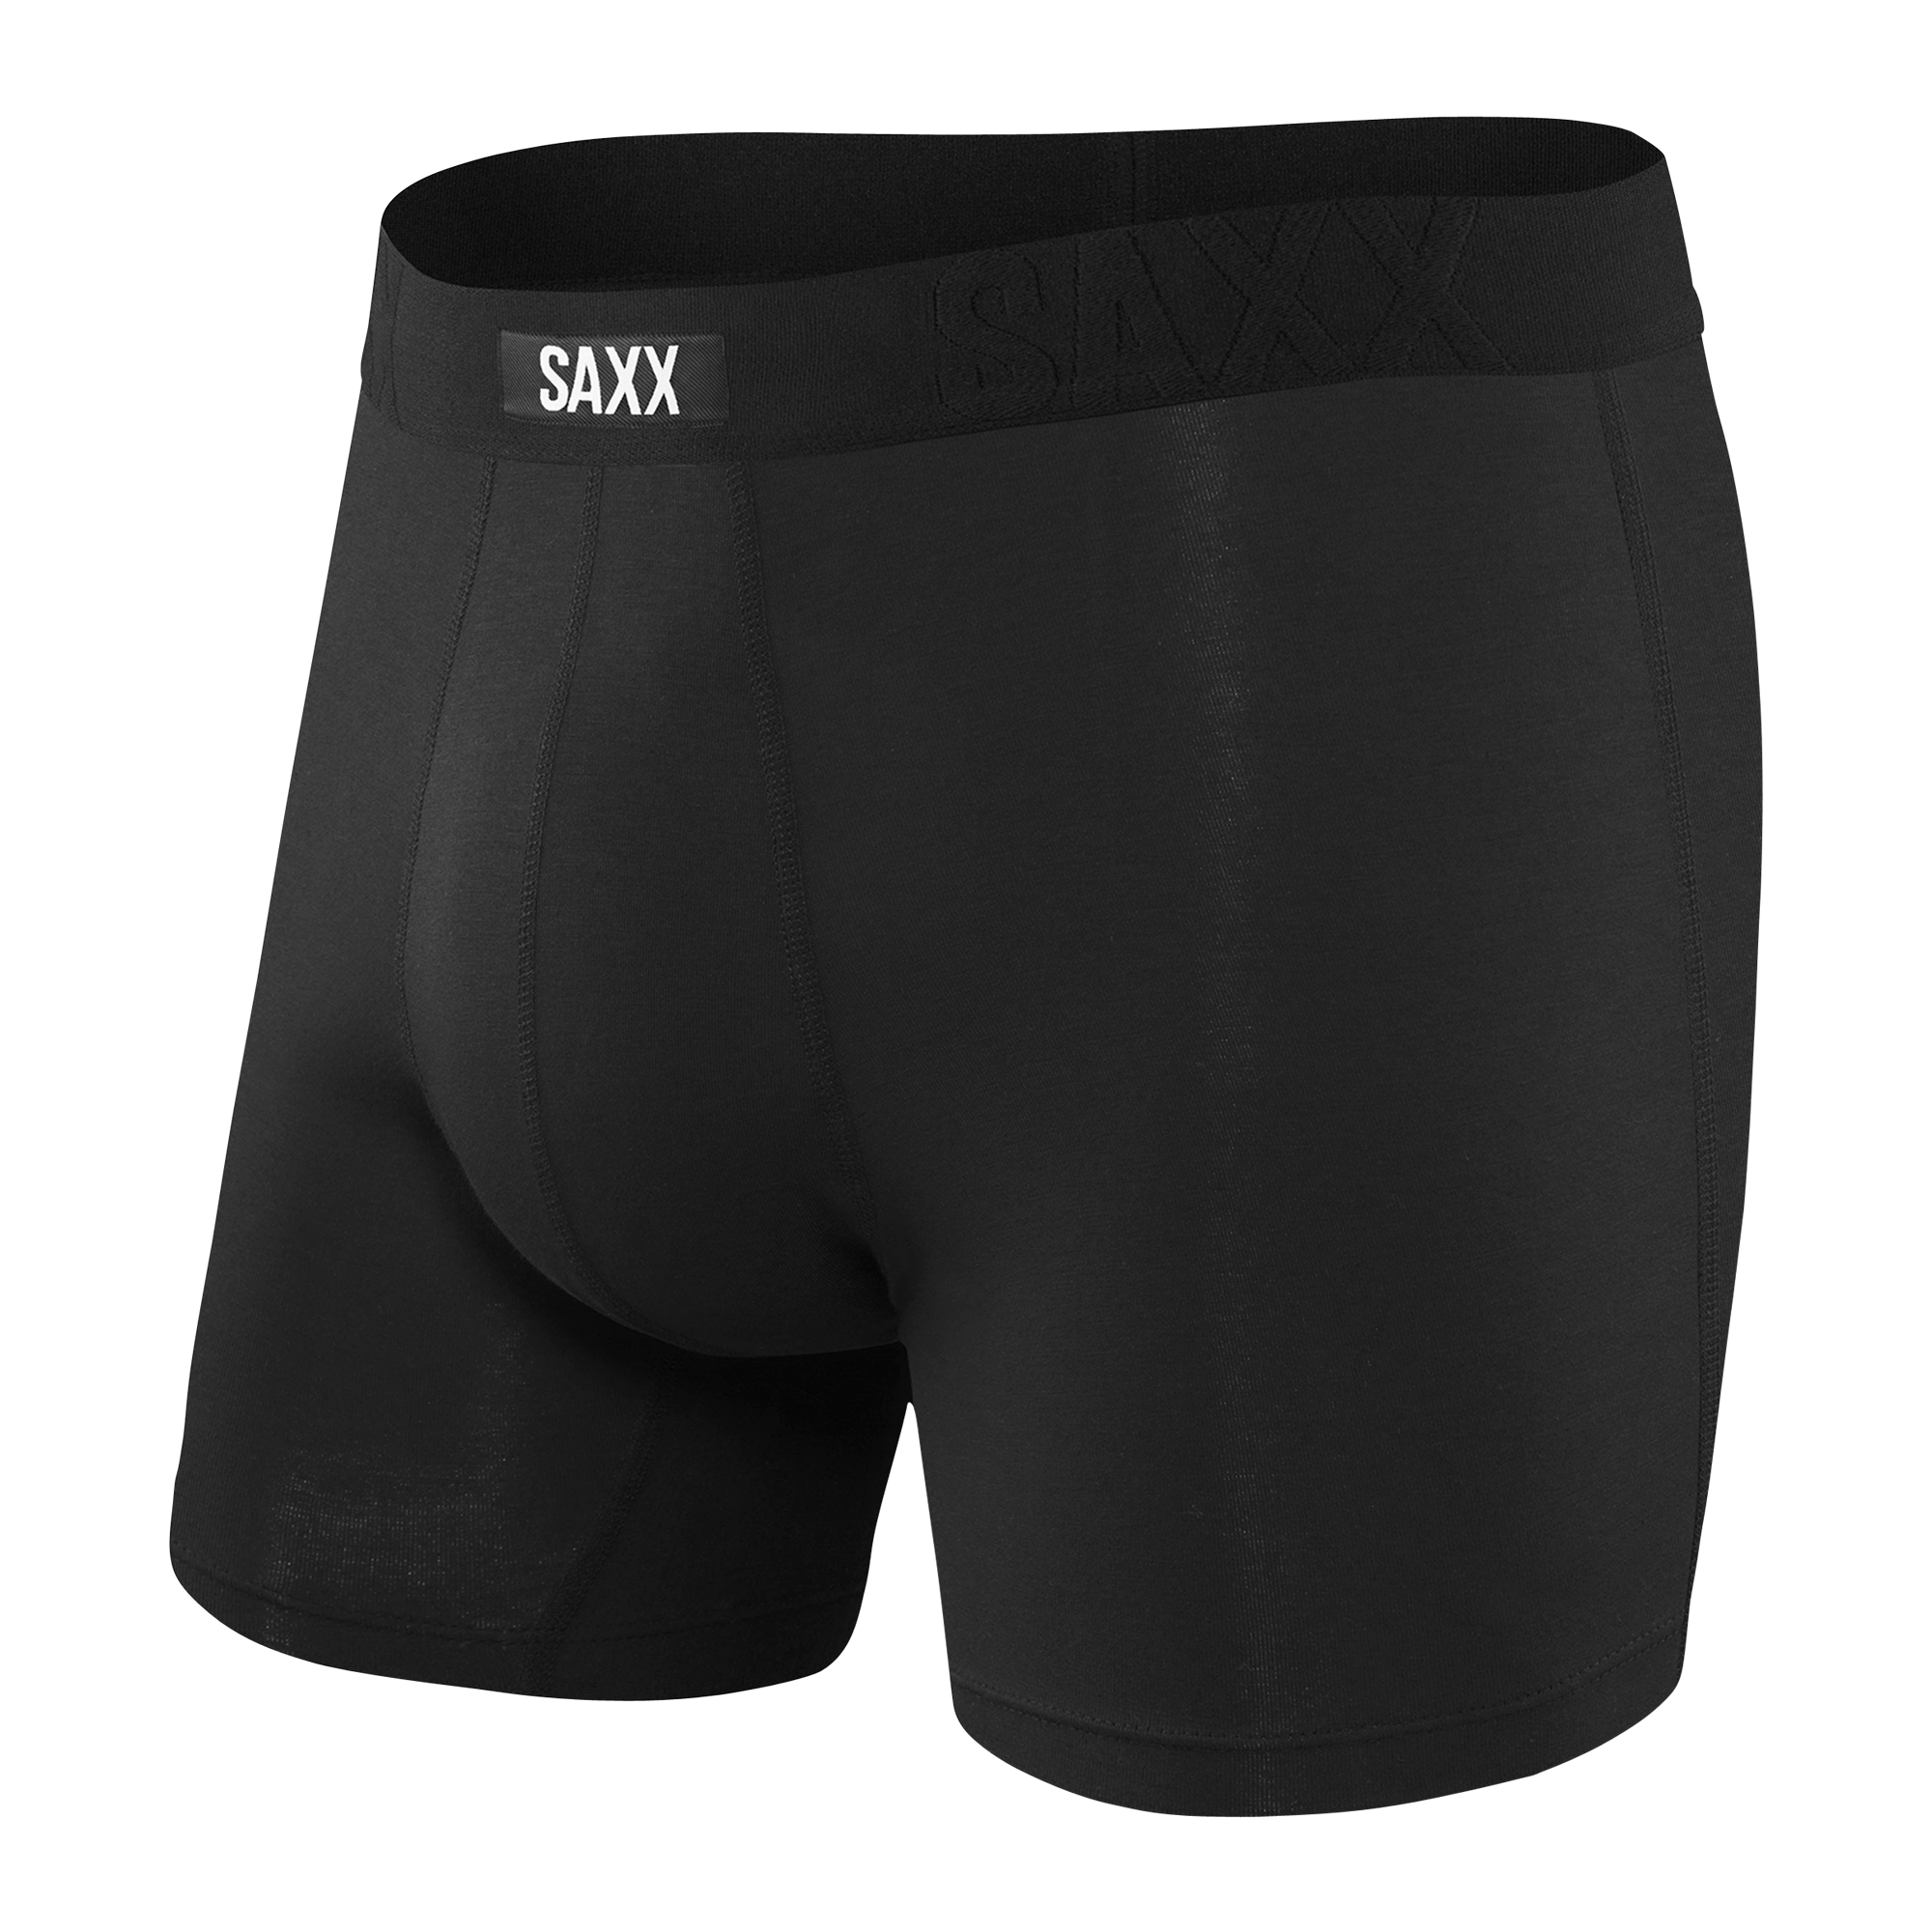 Saxx Undercover Cotton - Mutande - Uomo